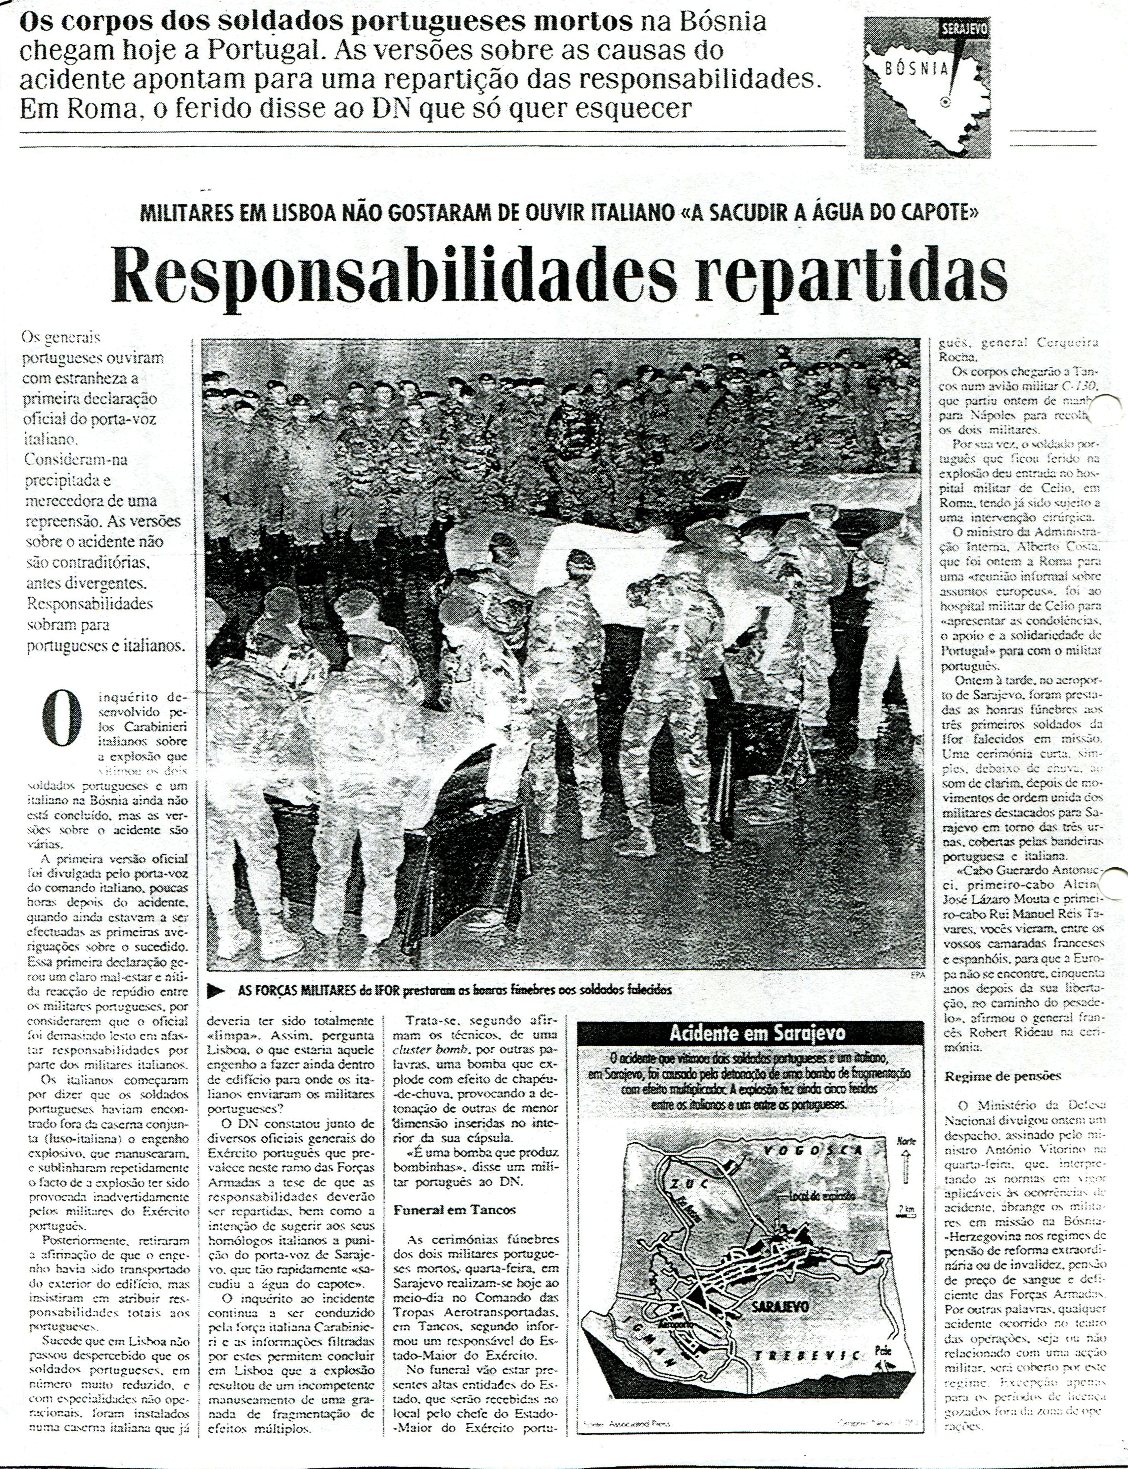 26JAN96 - Diário de Notícias